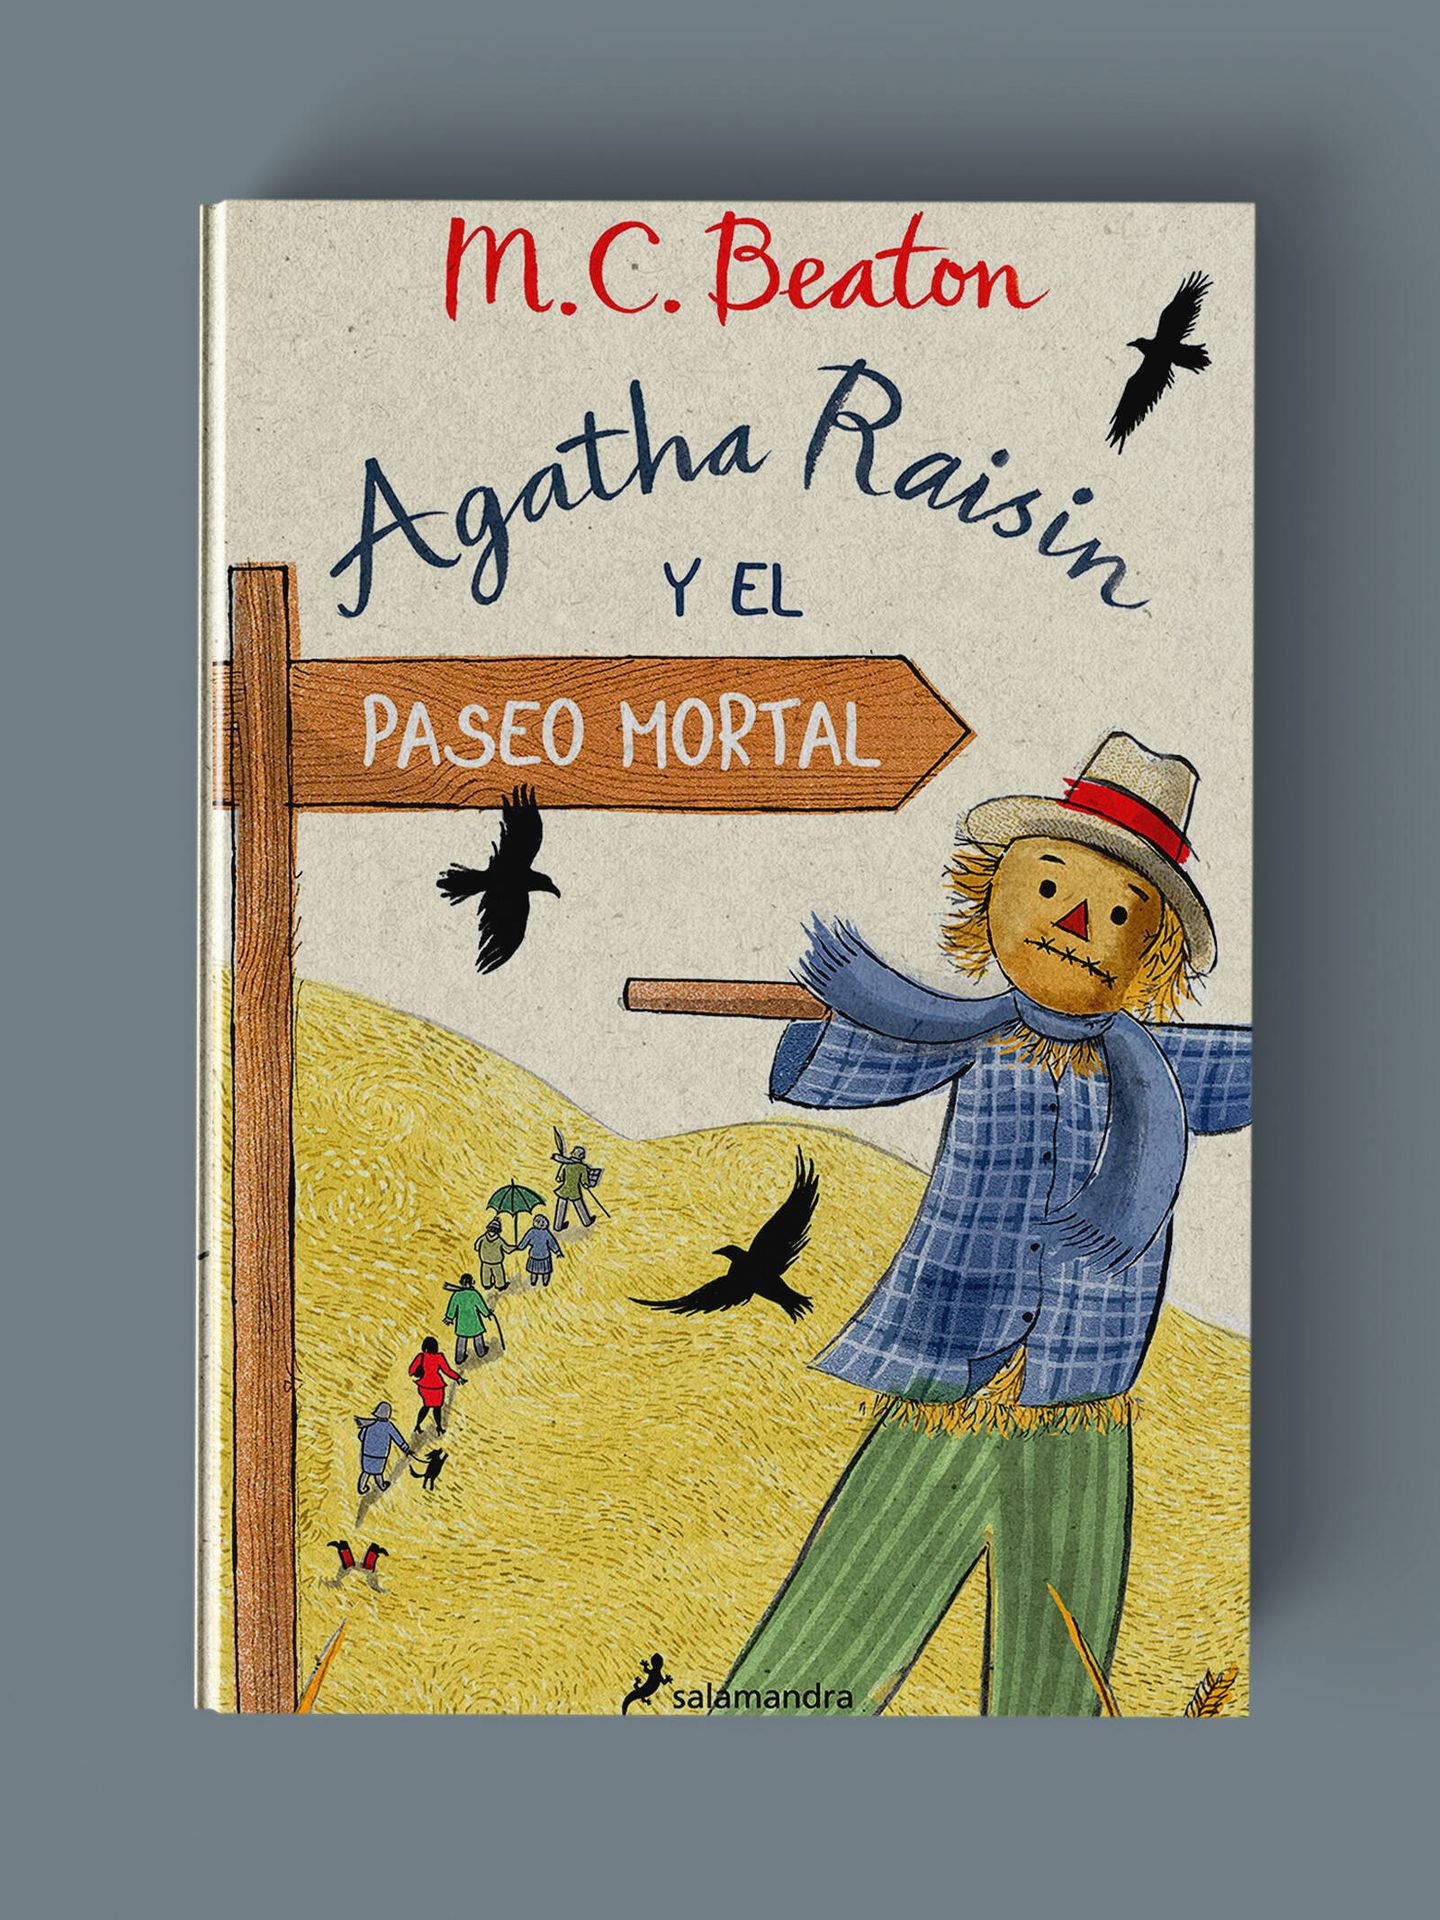 'Agatha Raisin y el paseo mortal' de M.C. Beaton.